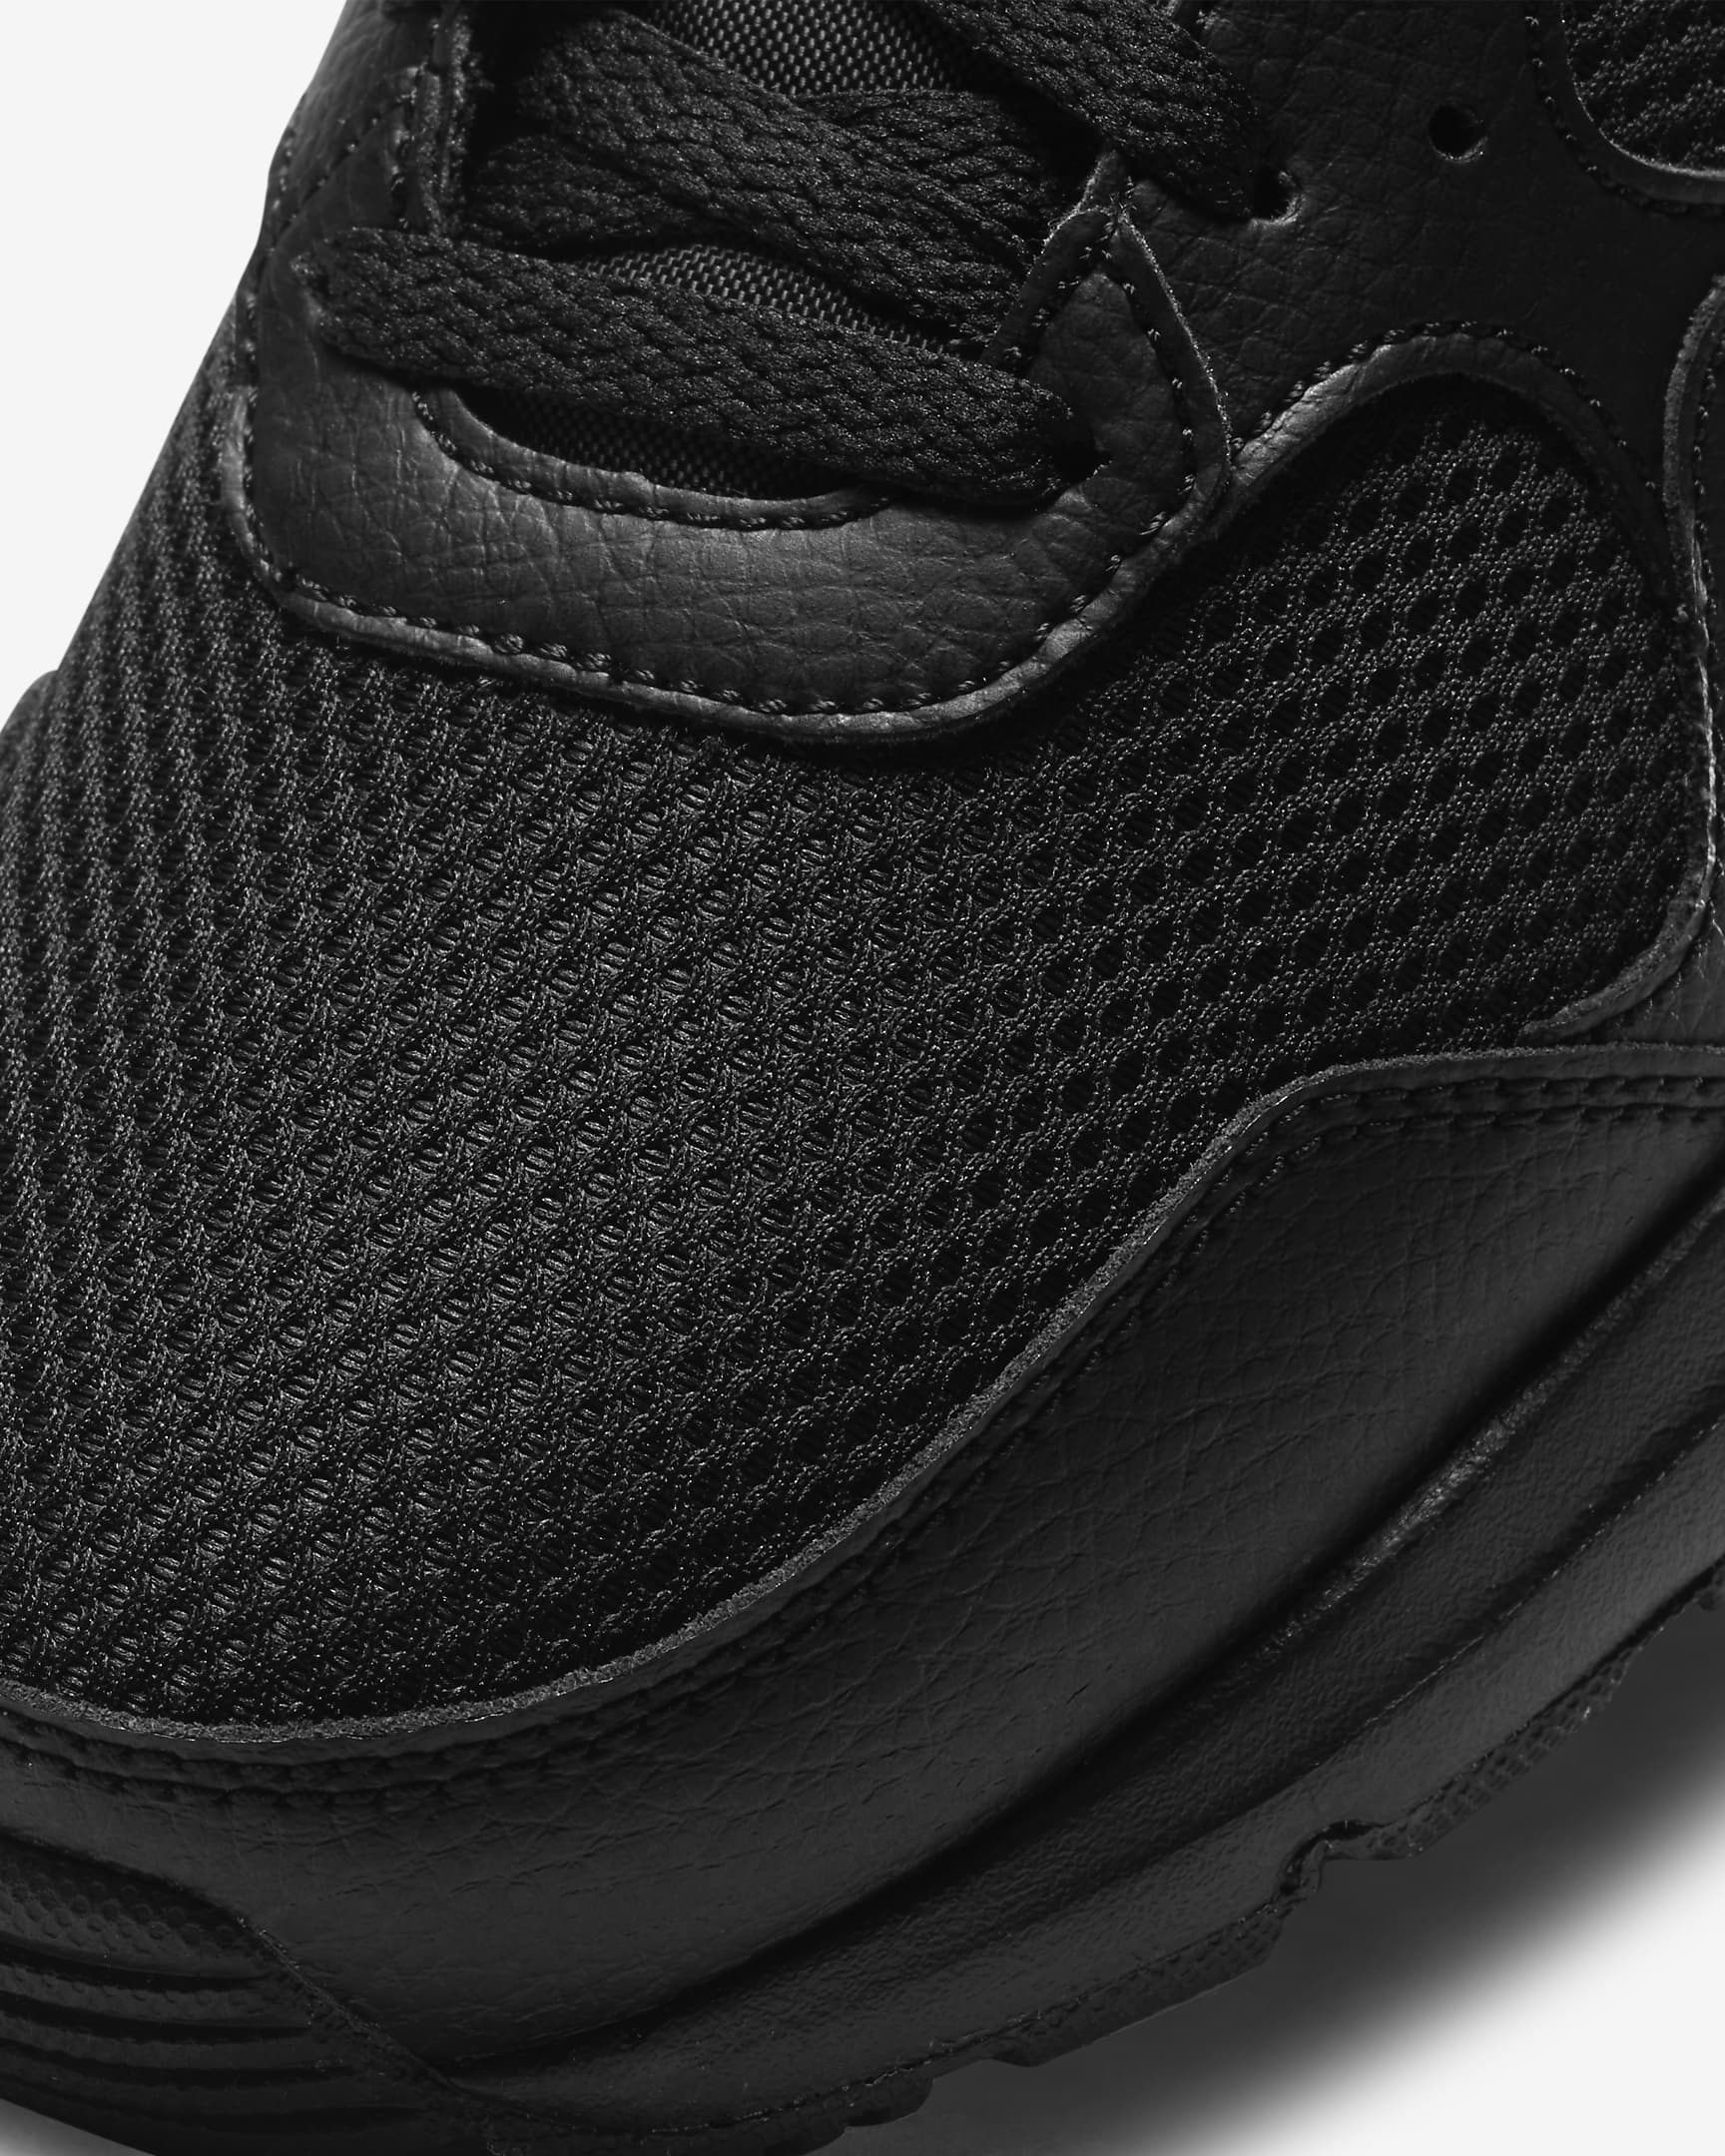 Nike Air Max SC-sko til mænd - sort/sort/sort